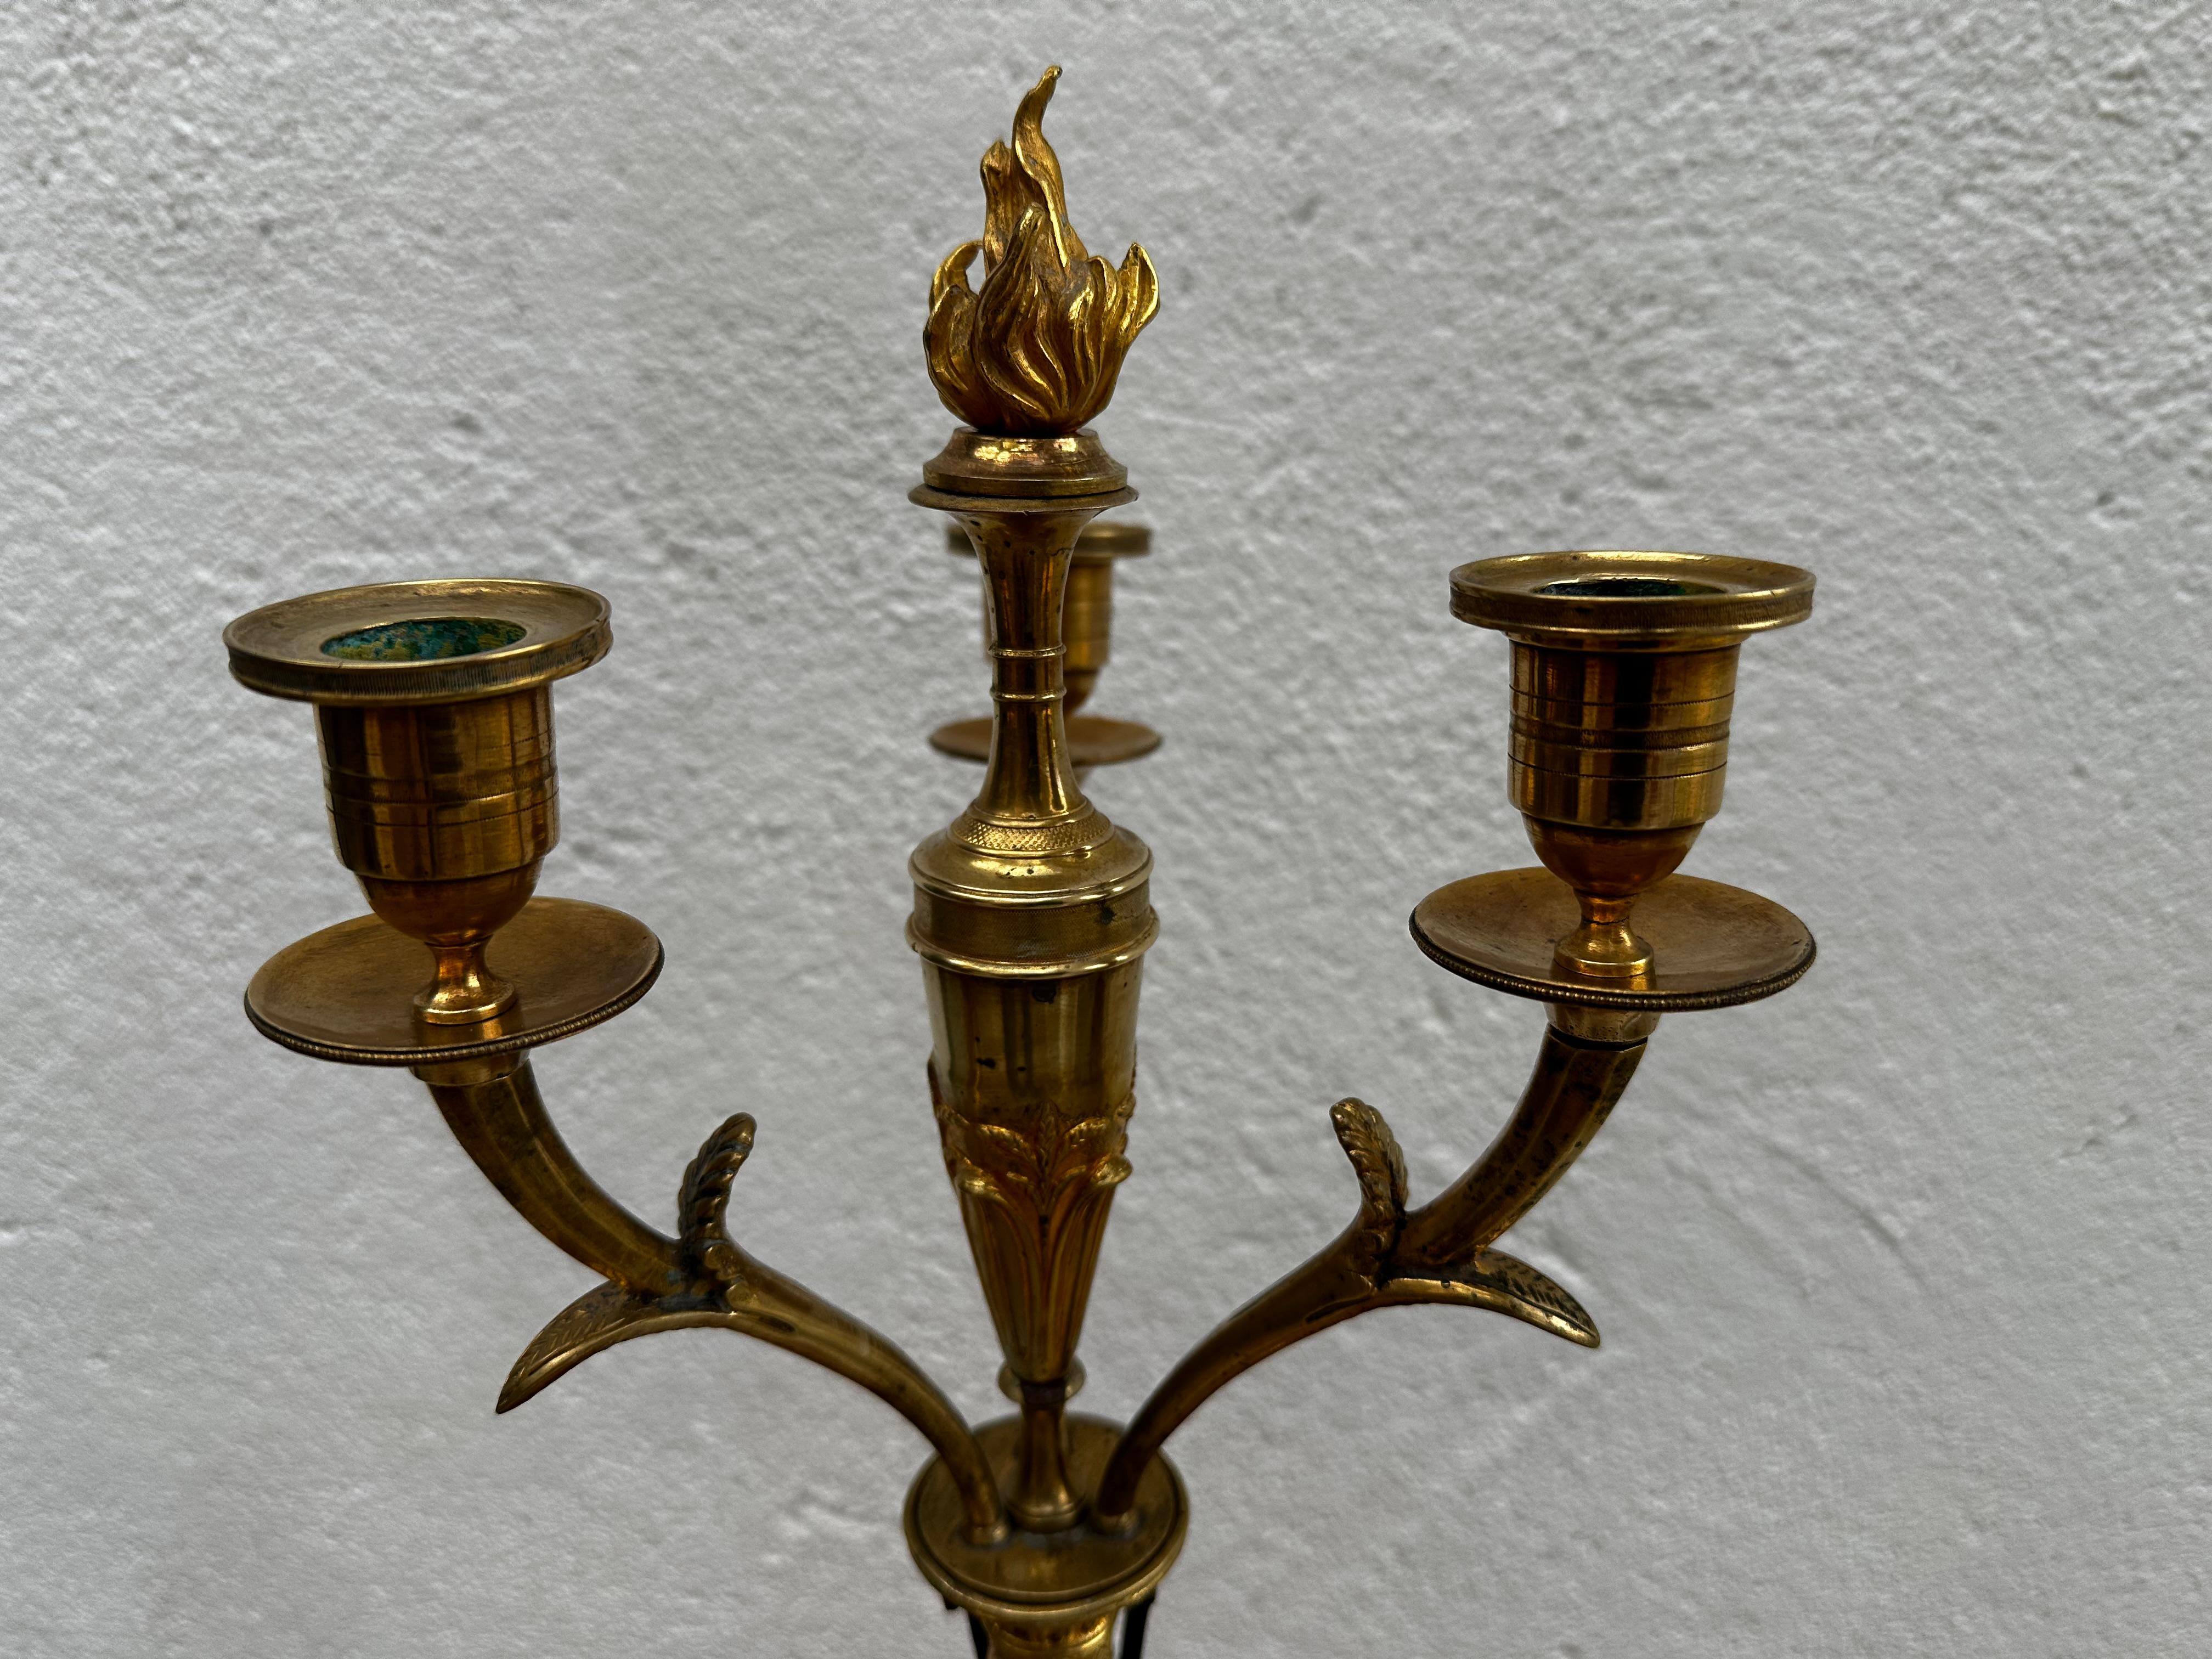 Kandelaber mit Platz für drei Kerzen, hergestellt in Berlin um 1810. Vergoldete und patinierte Bronze. Dekoriert mit einem stehenden Greif mit Frauengesicht, vergoldeten Verzierungen und Löwenfüßen im unteren Teil.